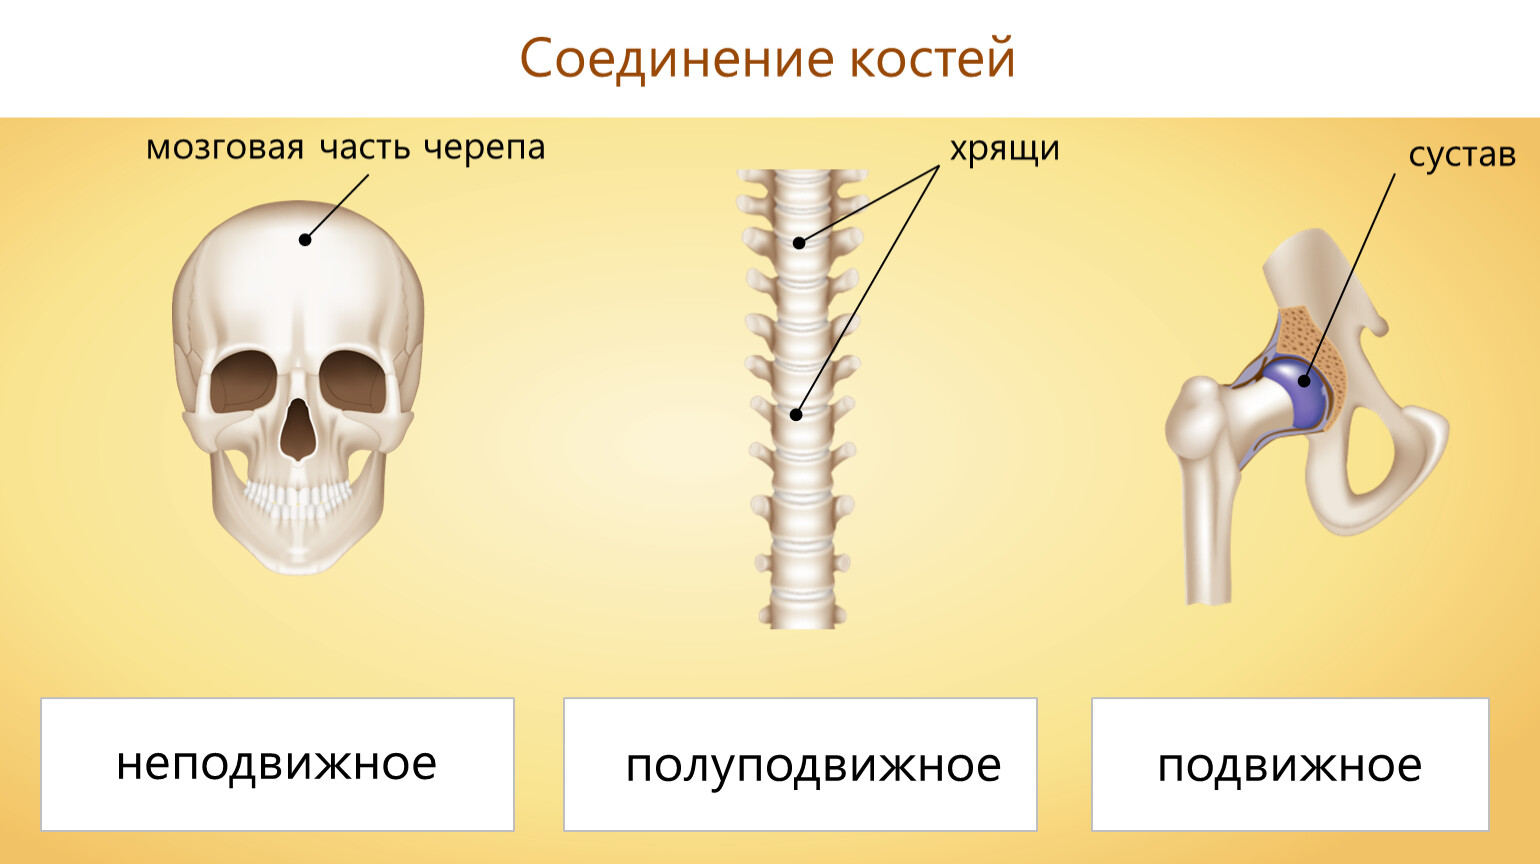 Подвижное соединение между костями. Типы соединения костей неподвижное и полуподвижное. Подвижные соединения костей скелета. Соединение костей неподвижные полуподвижные. Соединения костей подвижные и неподвижные полуподвижные таблица.